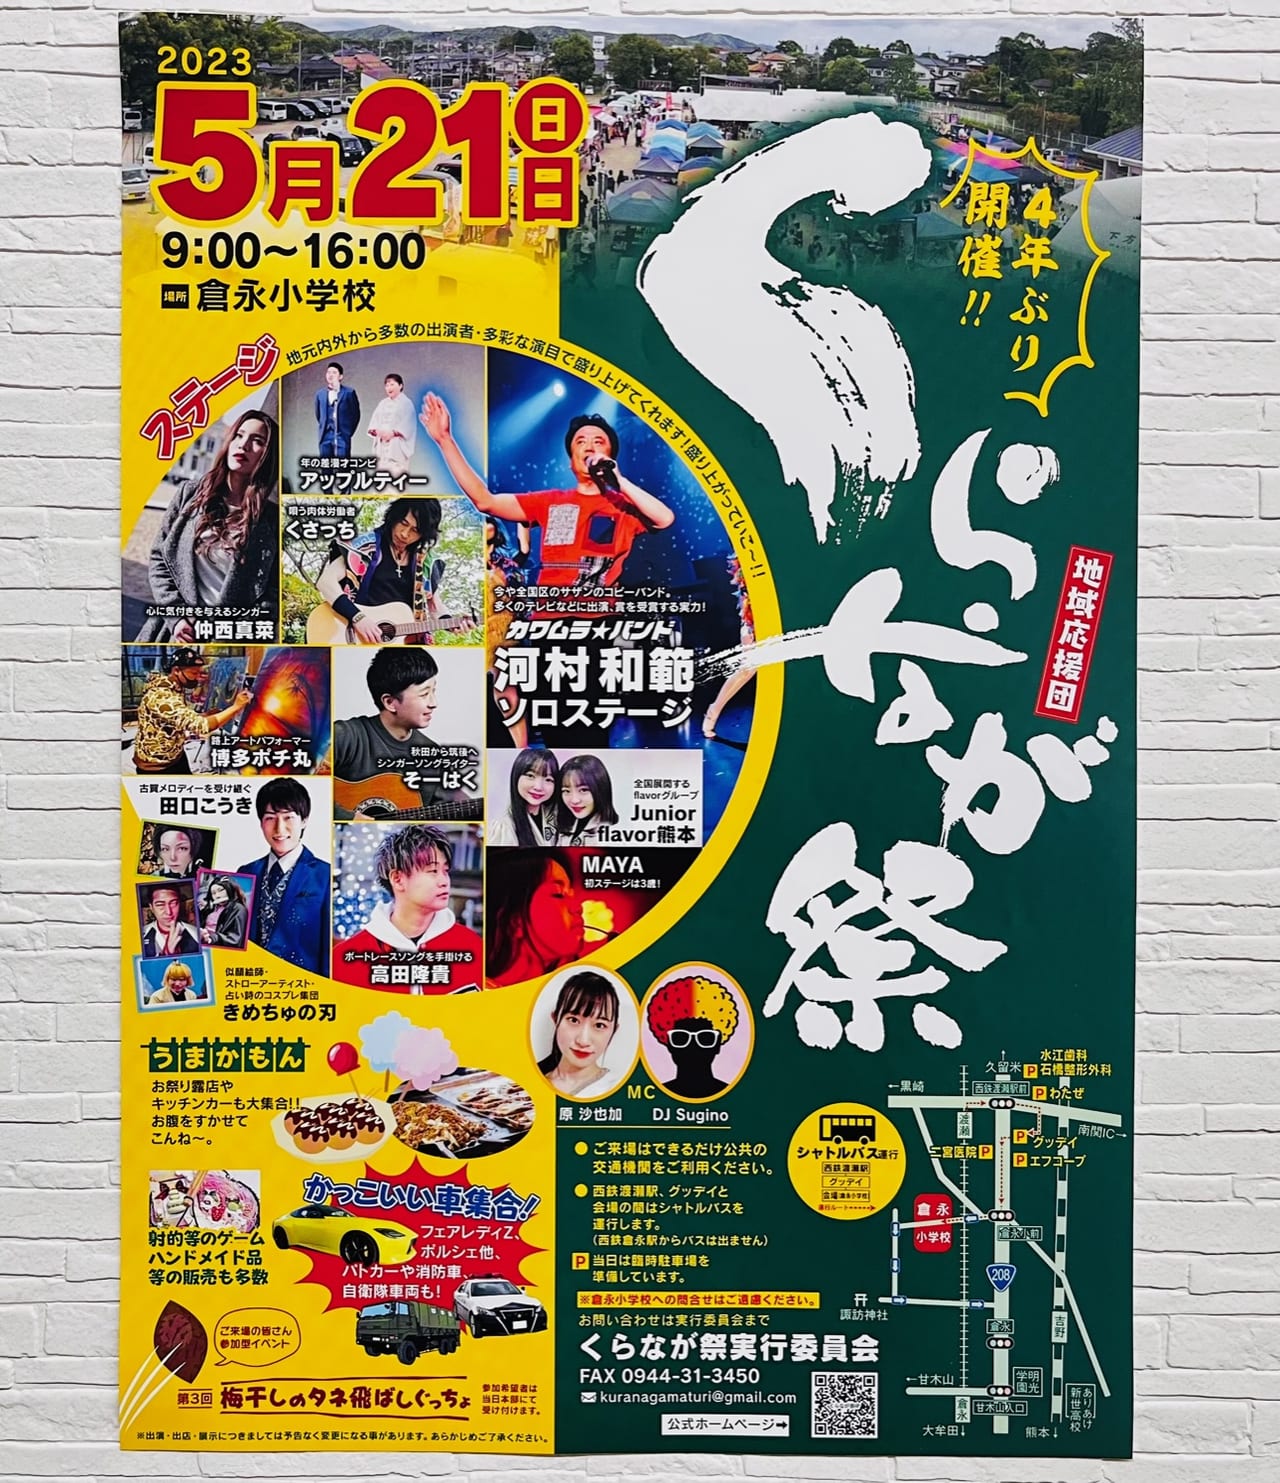 2023年5月21日に大牟田市で開催されるくらなが祭